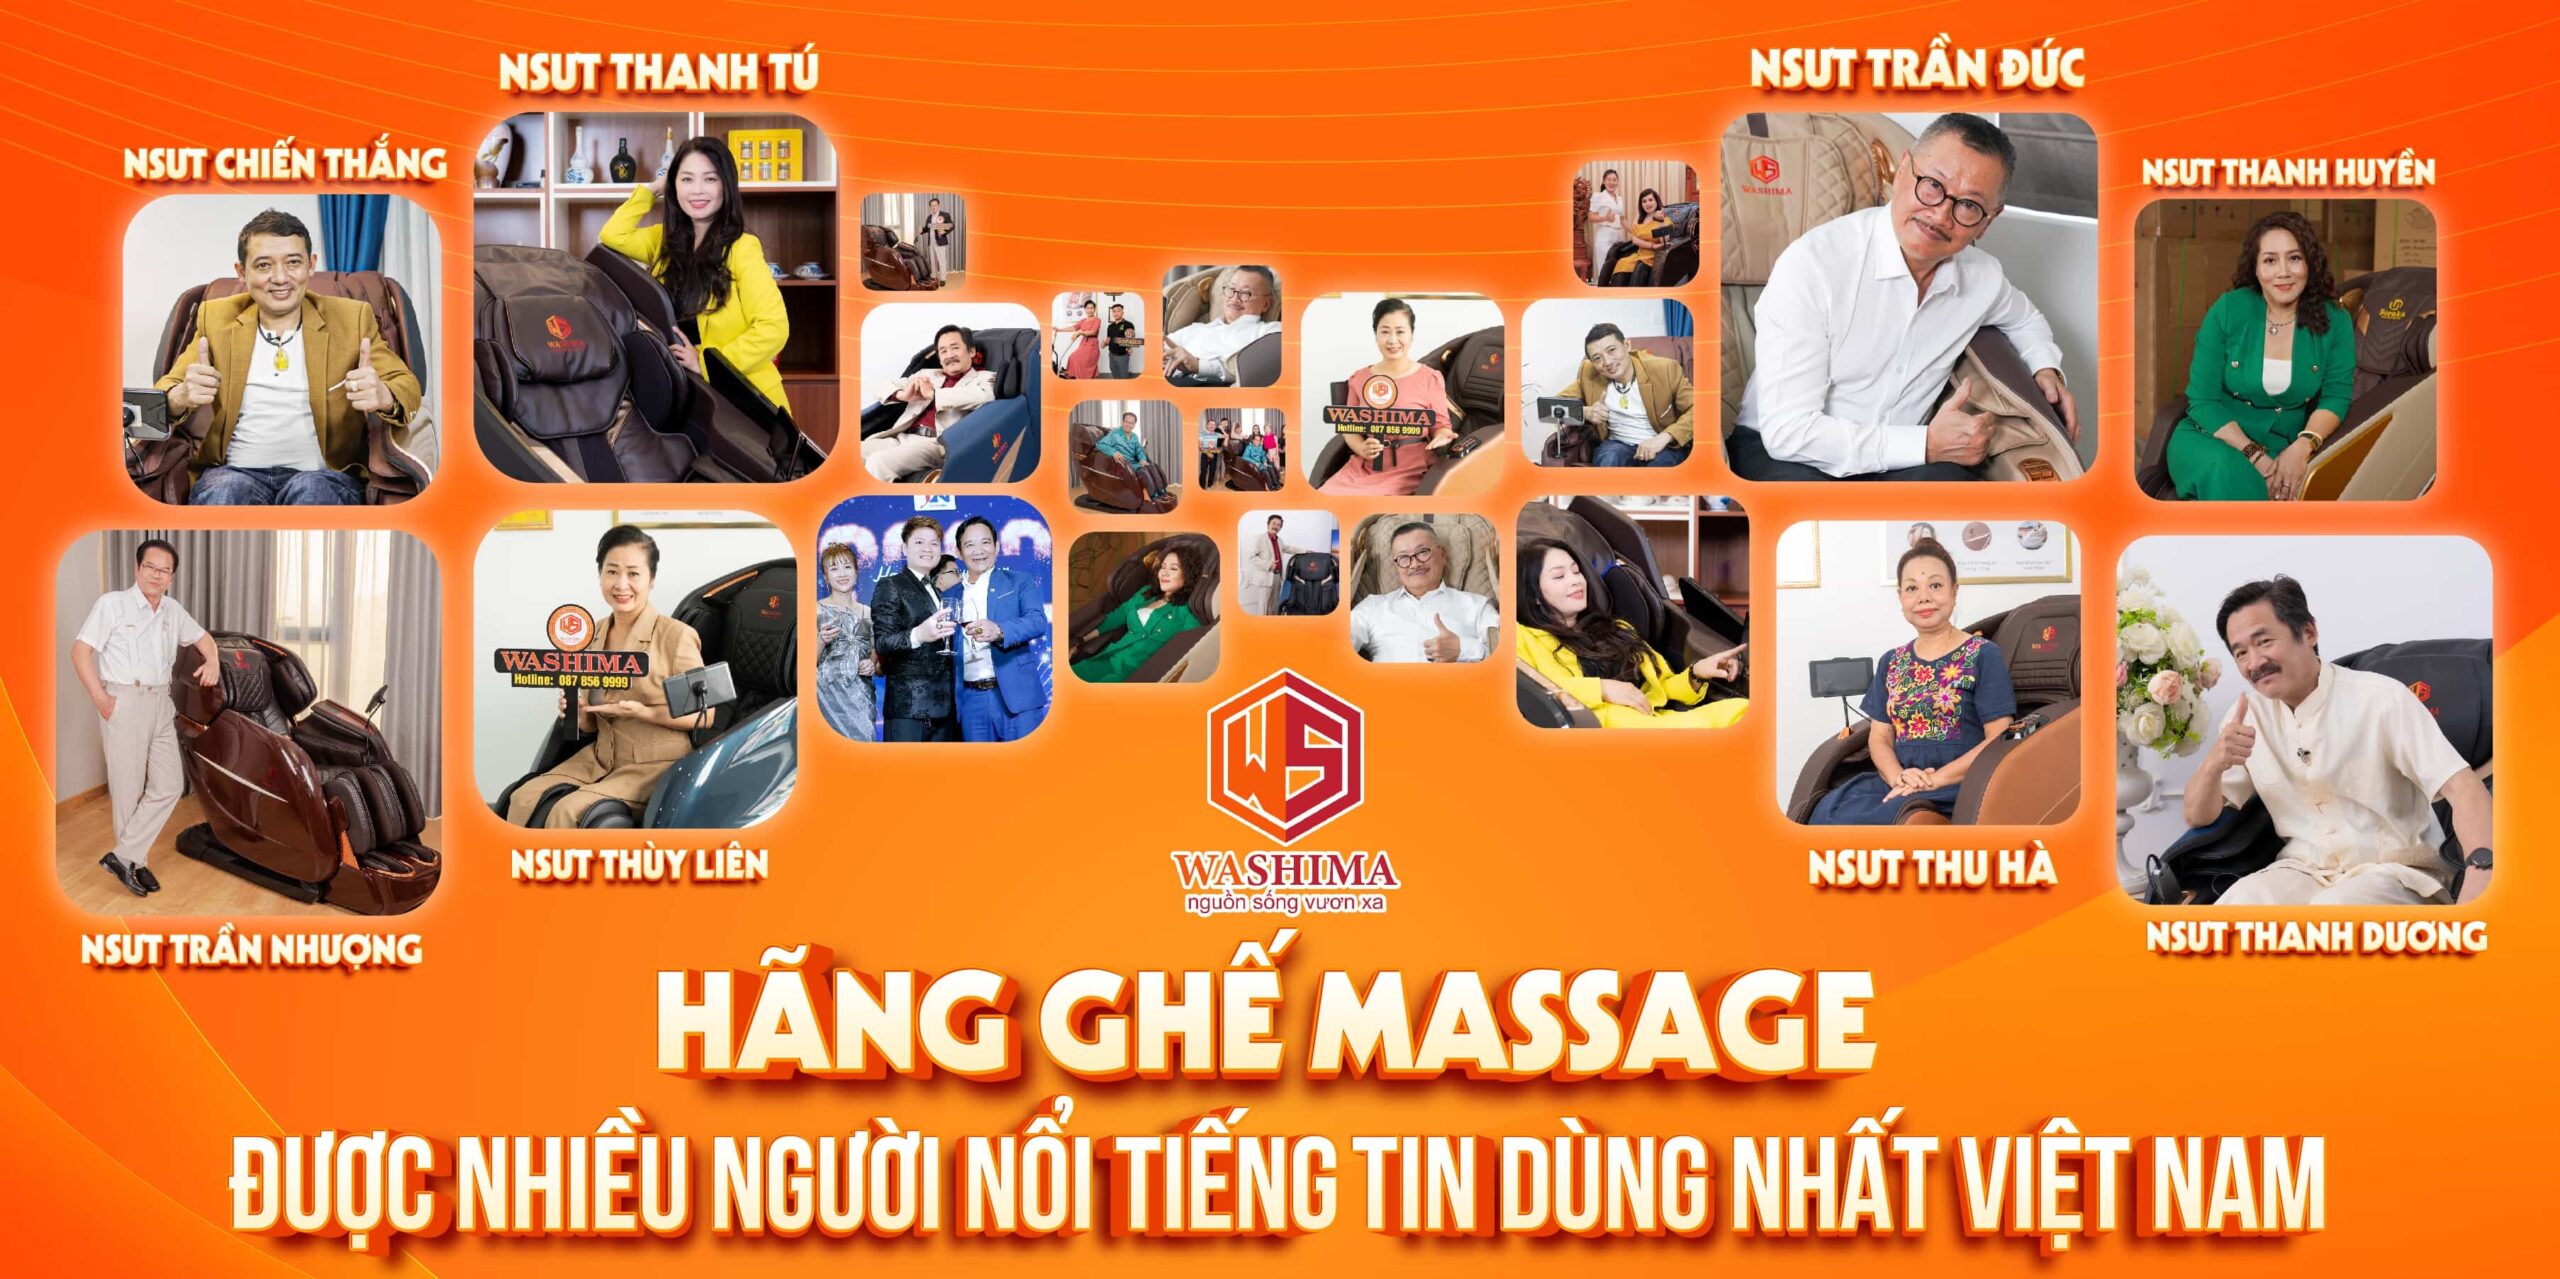 Ghế massage Washima nhận được sự tin tưởng từ nhiều nghệ sỹ